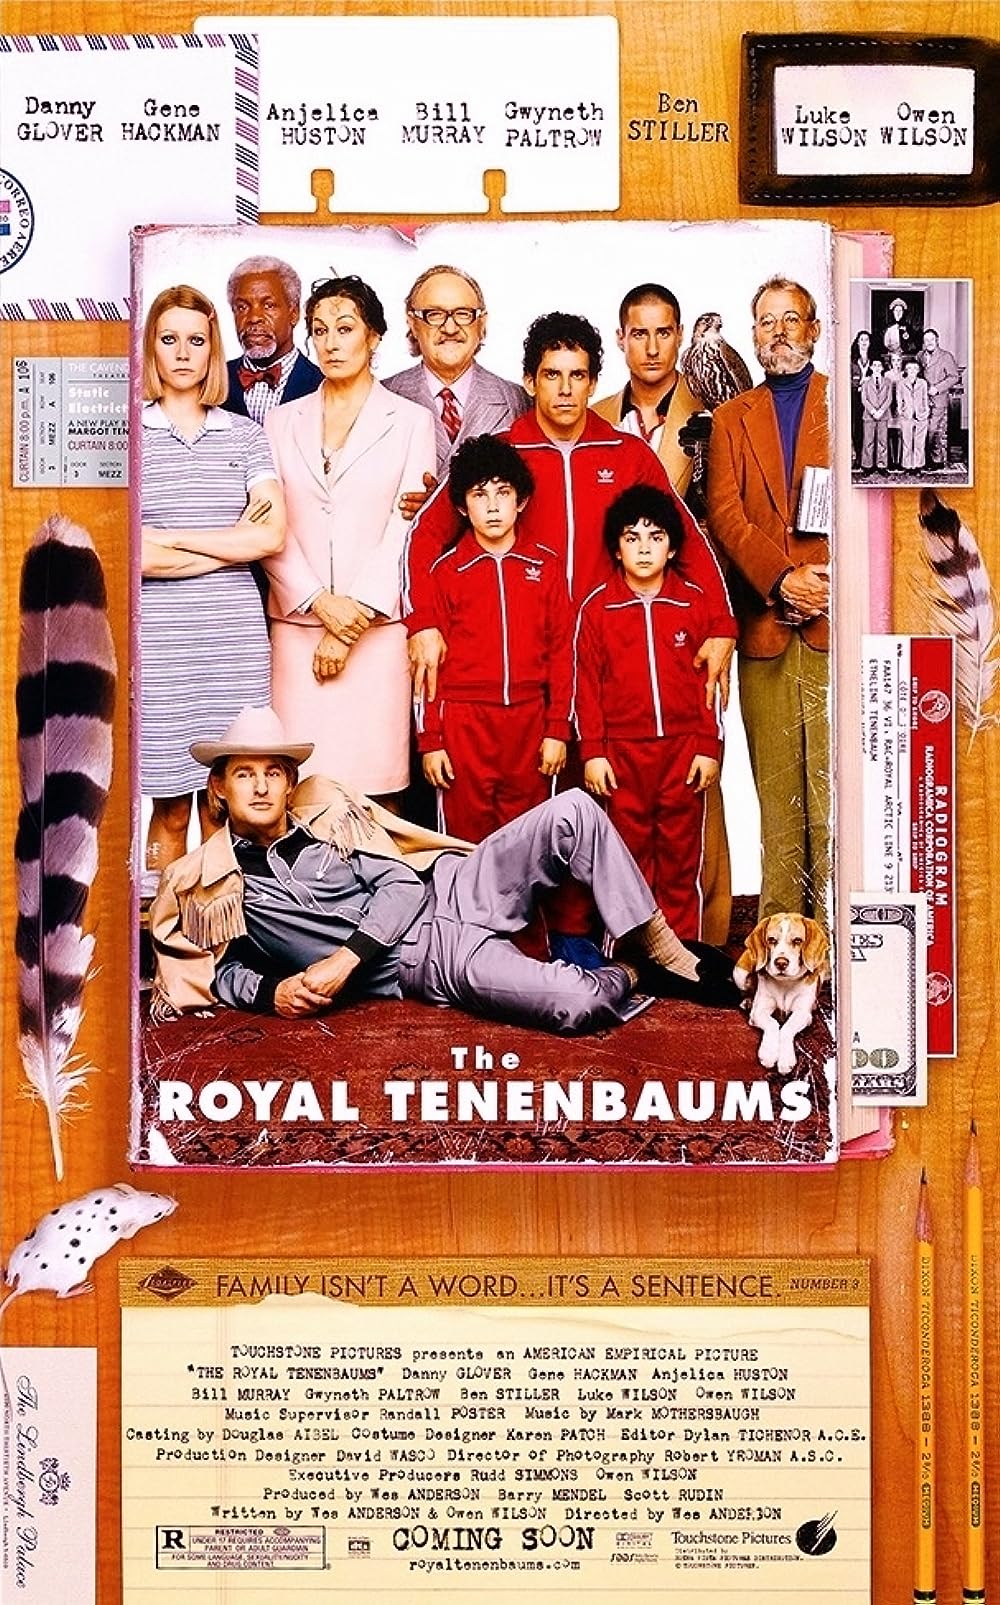 The Royal Tenenbaums (2001): เดอะ รอยัล เทนเนนบาว์ม ครอบครัวสติบวม